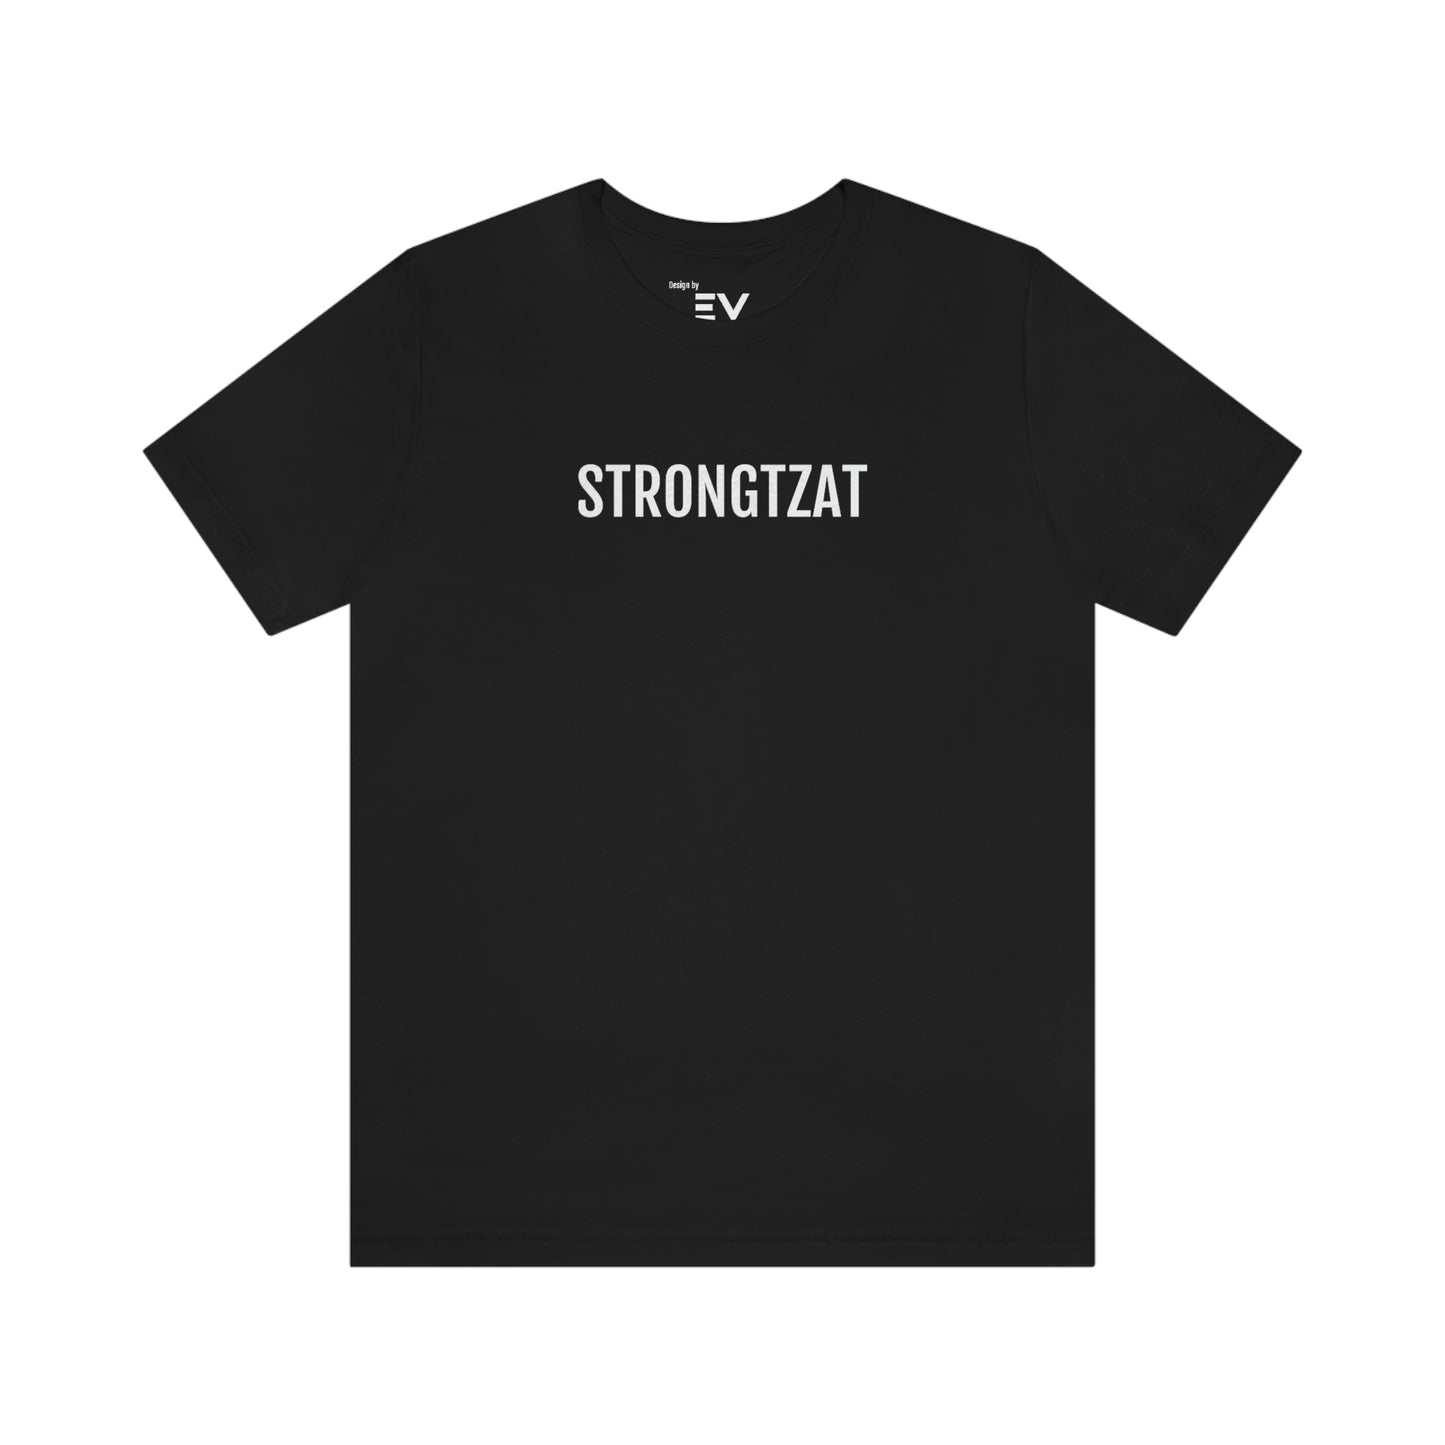 Strongtzat | Unisex T-Shirt uit Oost-Vlaanderen - Zwart